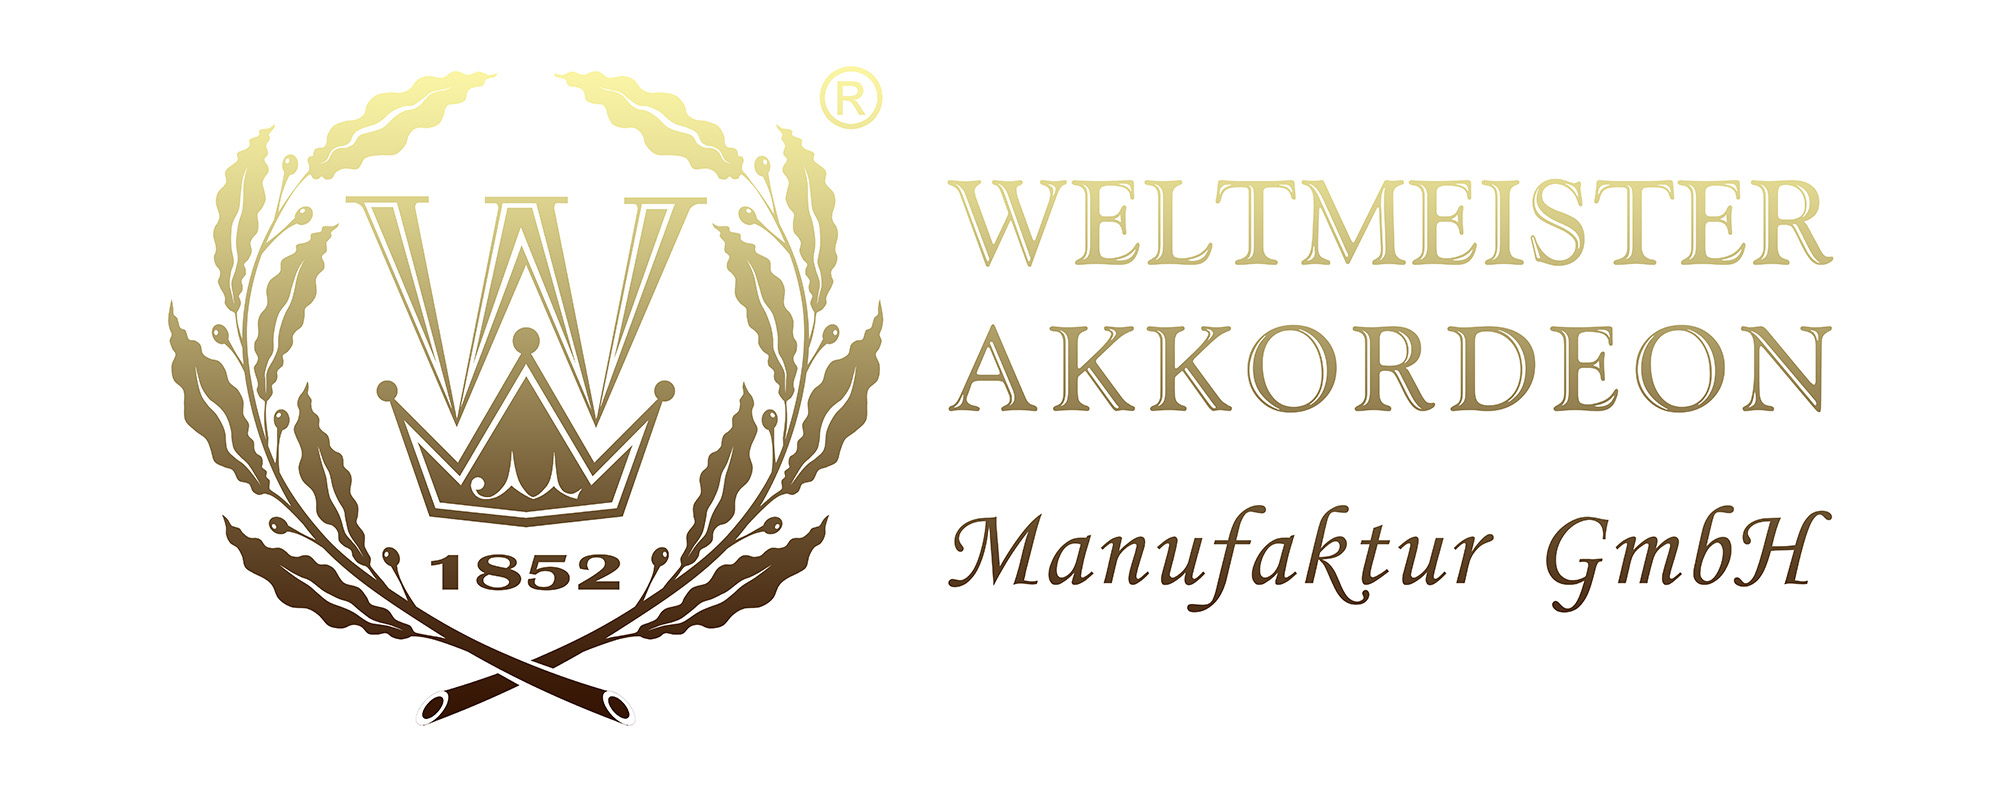 Разработка логотипа для немецкой фабрики по производству музыкальных инструментов "WELTMEISTER AKKORDEON" ...